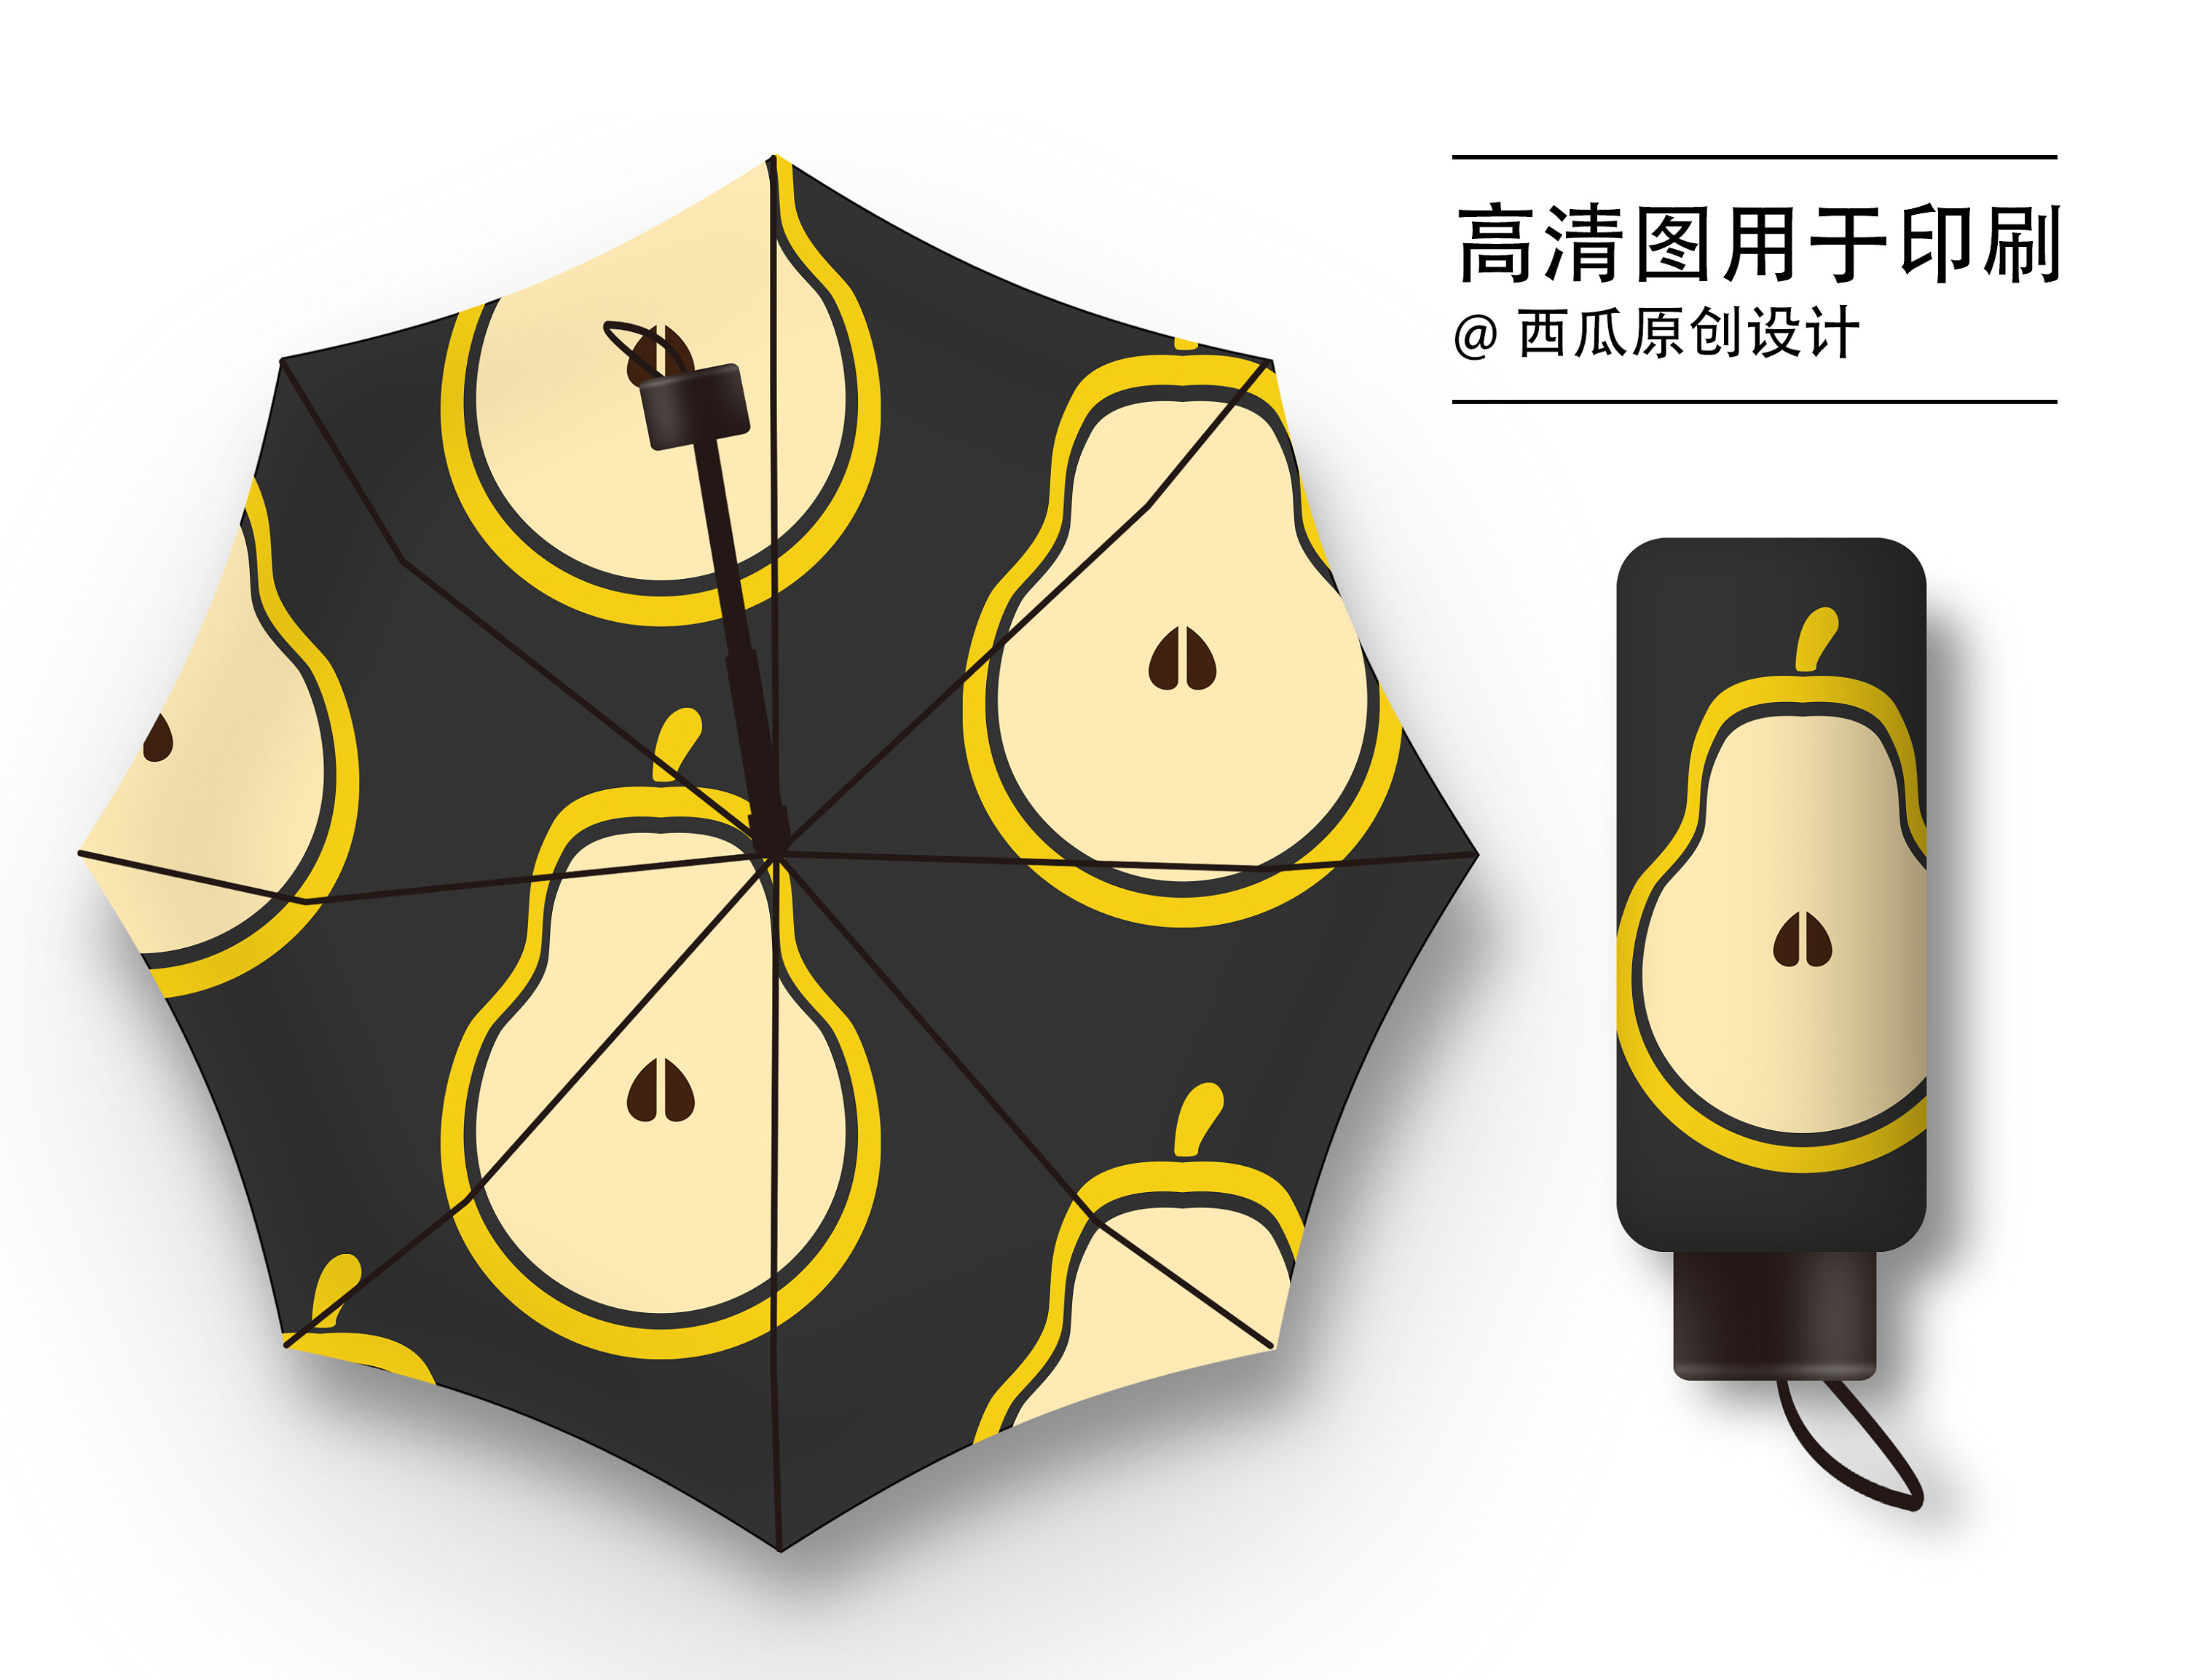 6款雨伞水果图案设计-古田路9号-品牌创意/版权保护平台